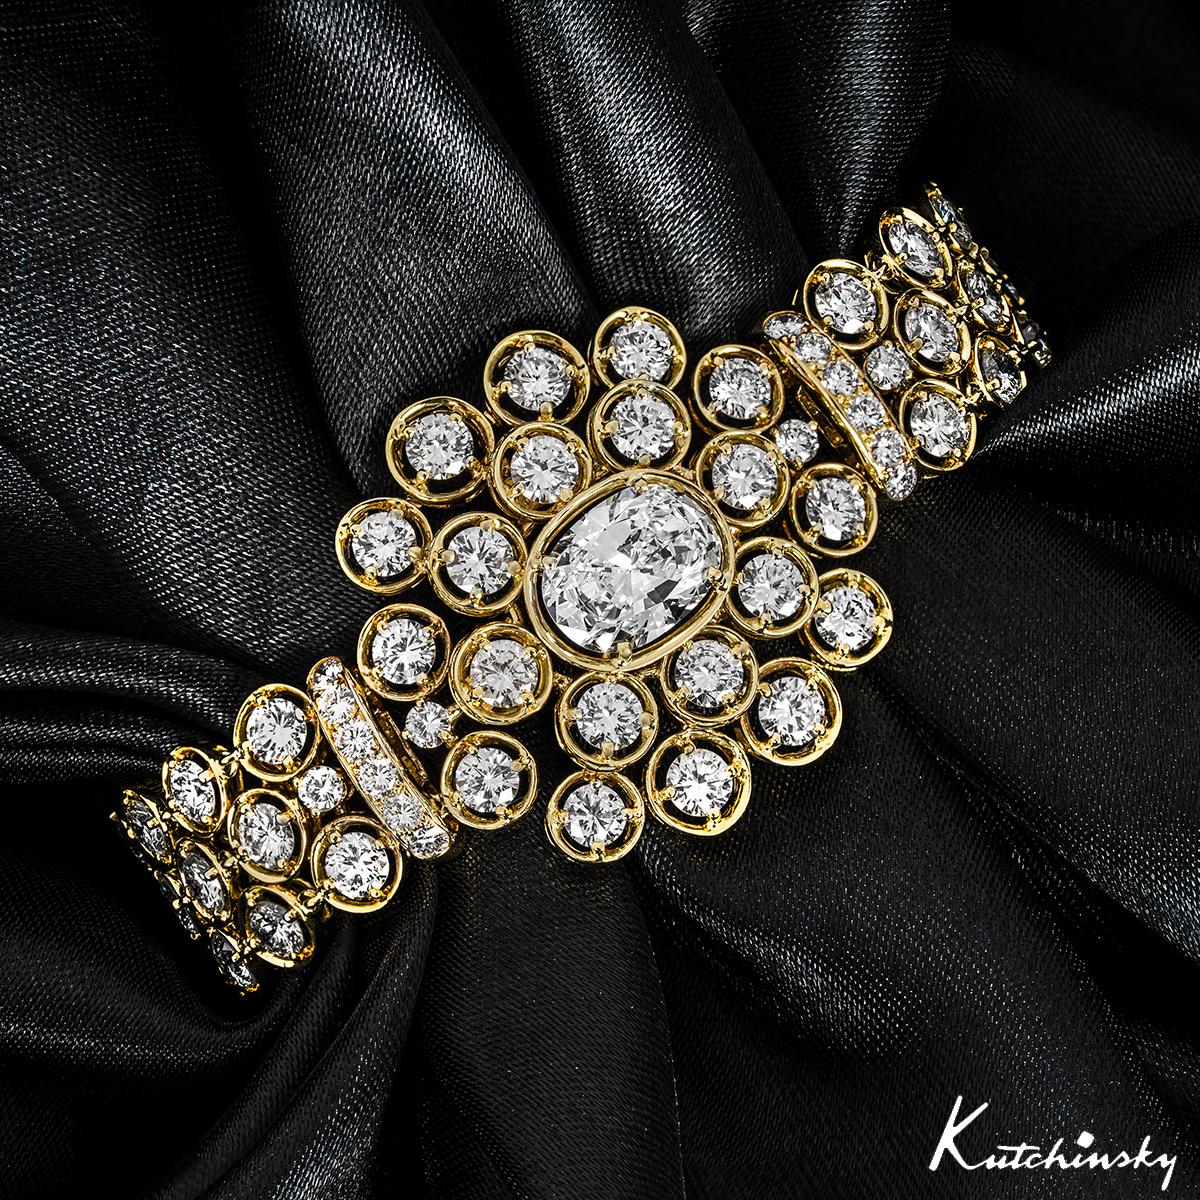 Ein außergewöhnliches Armband aus 18 Karat Gelbgold mit Diamanten von Kutchinsky. Die Mitte des Armbands ziert ein Diamant im Ovalschliff mit einem Gewicht von 2,72ct, Farbe E und Reinheit SI1. Von der Mitte aus strahlen 89 runde Diamanten im